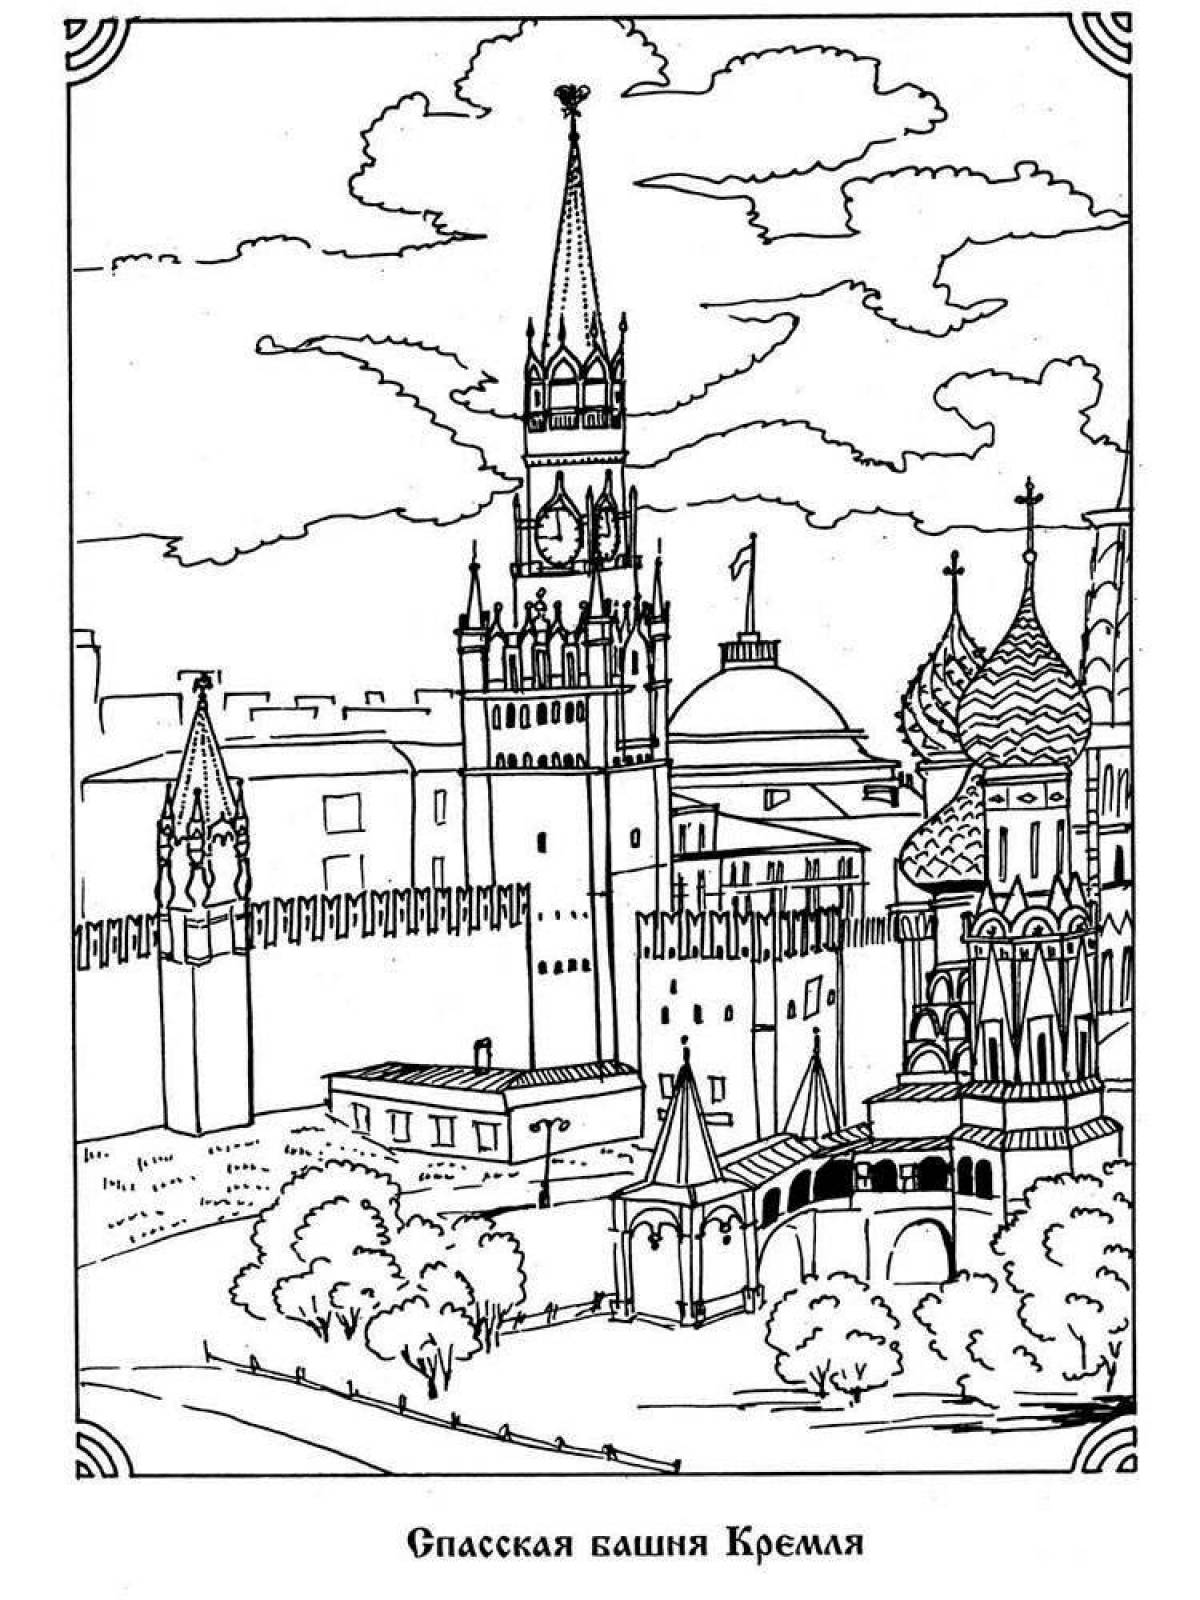 Merry Kremlin coloring for children